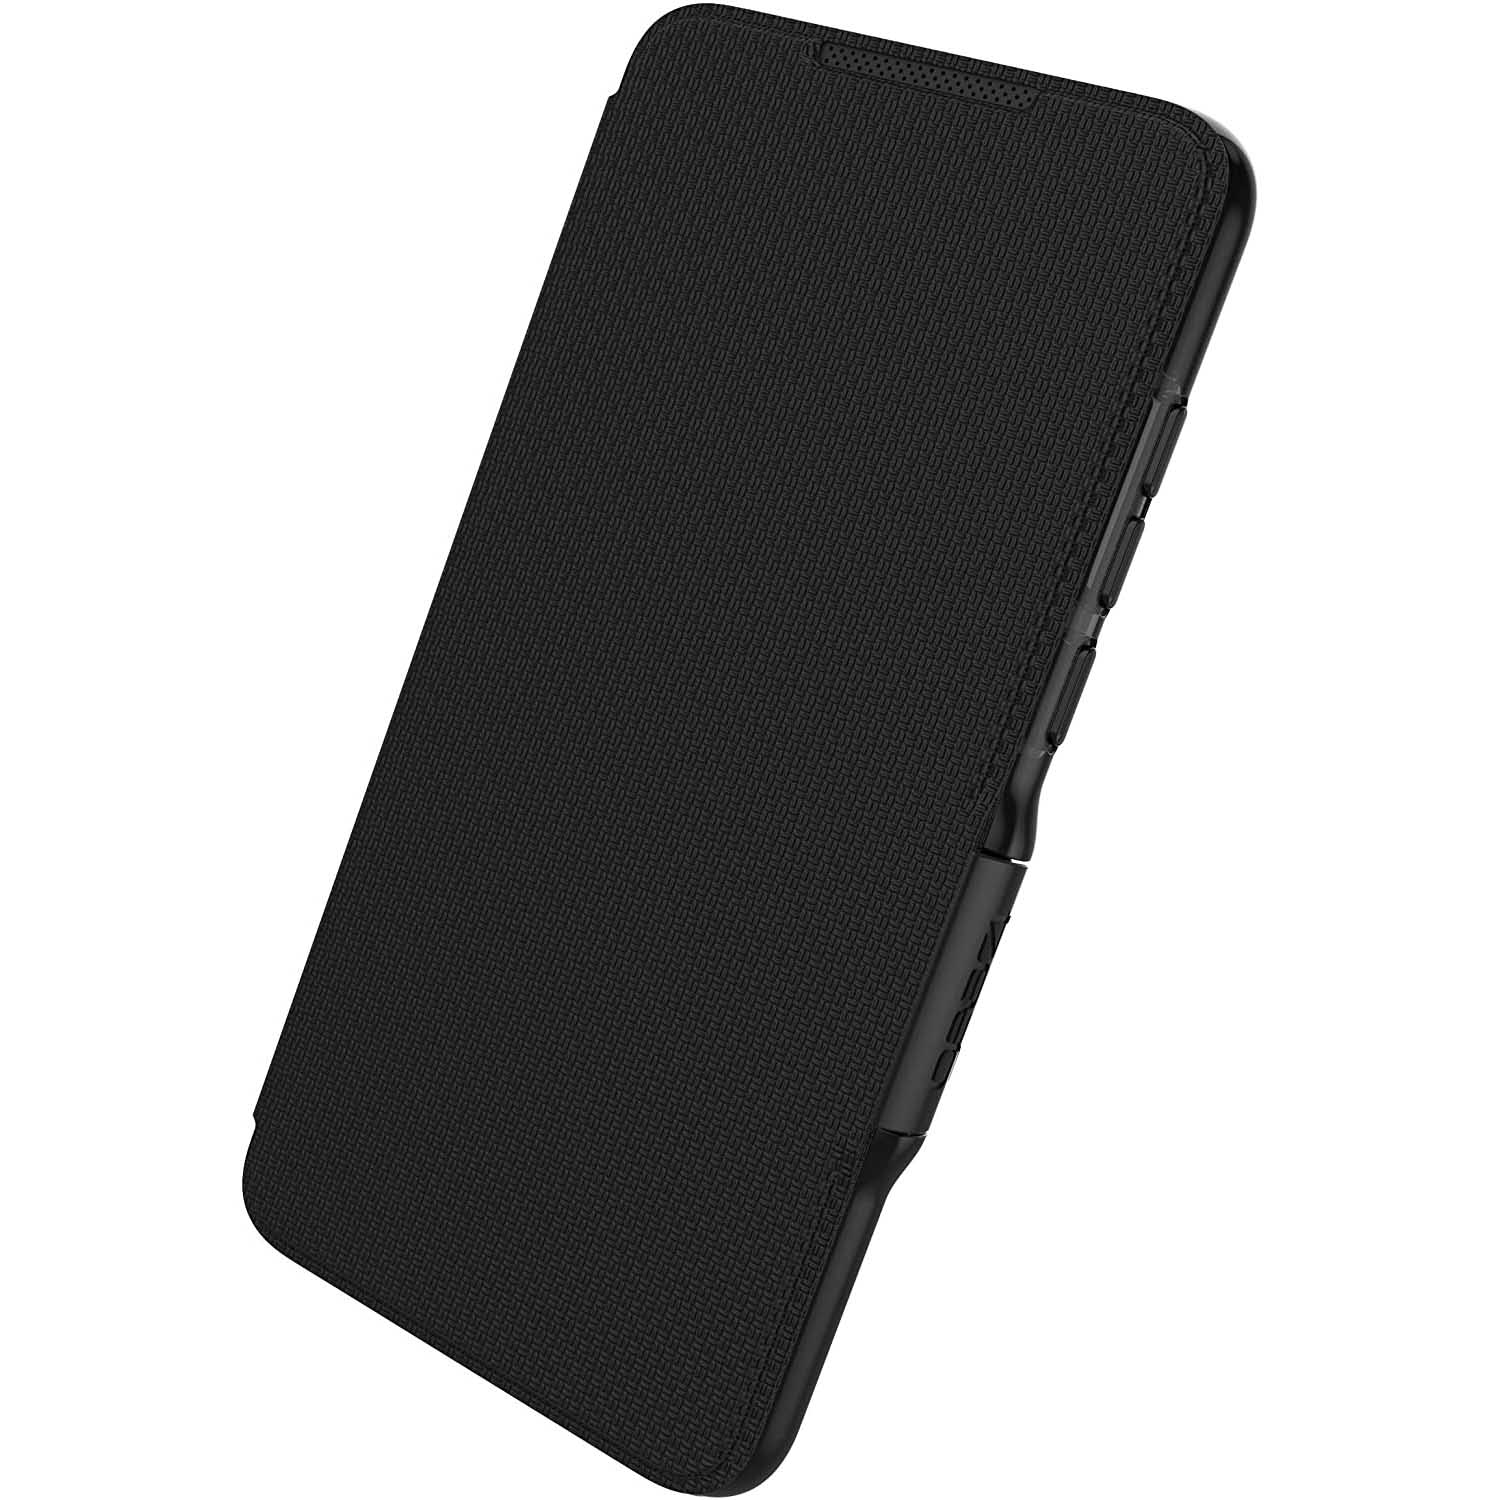 Schutzhülle Gear4 aus der Serie D3O Oxford für Huawei P30, schwarz.